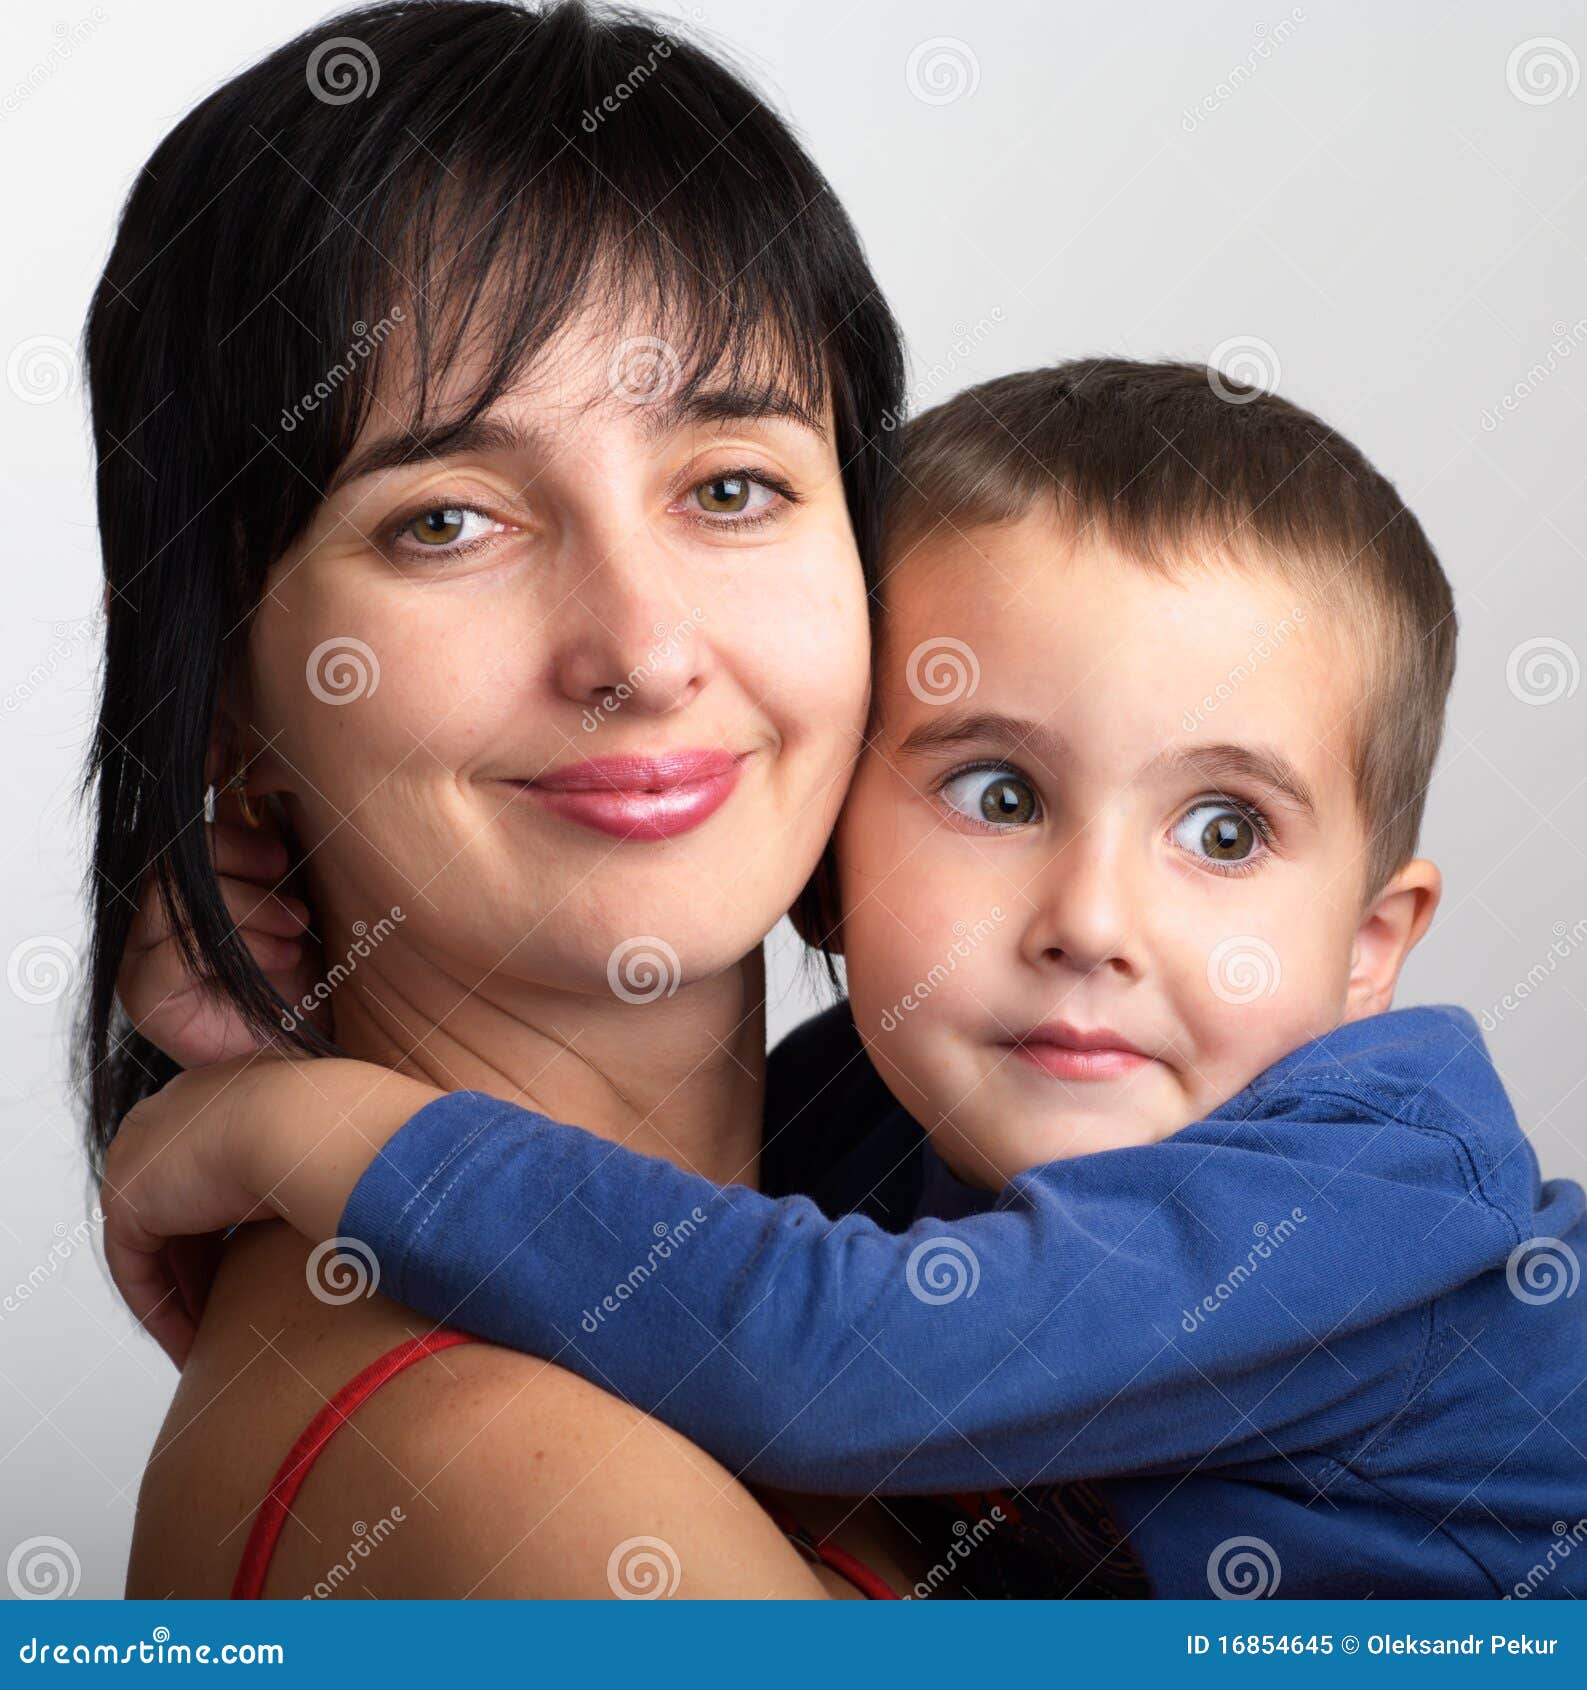 Мама с маленьким сыном видео. Мама смущает сына. Портрет сын обнял маму.